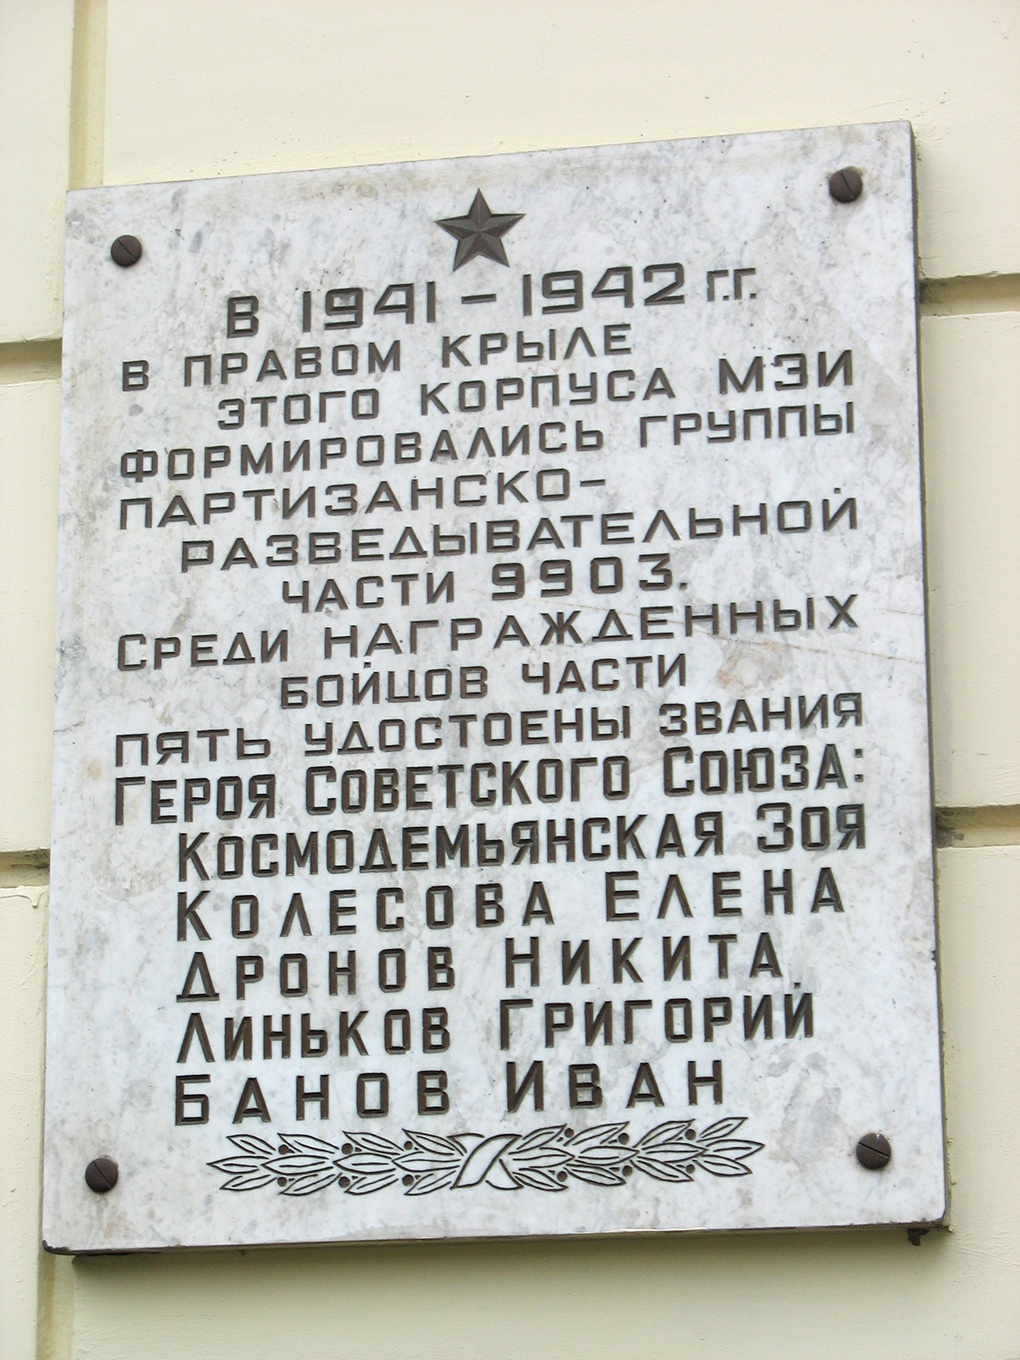 Мемориальная доска на здании МЭИ.